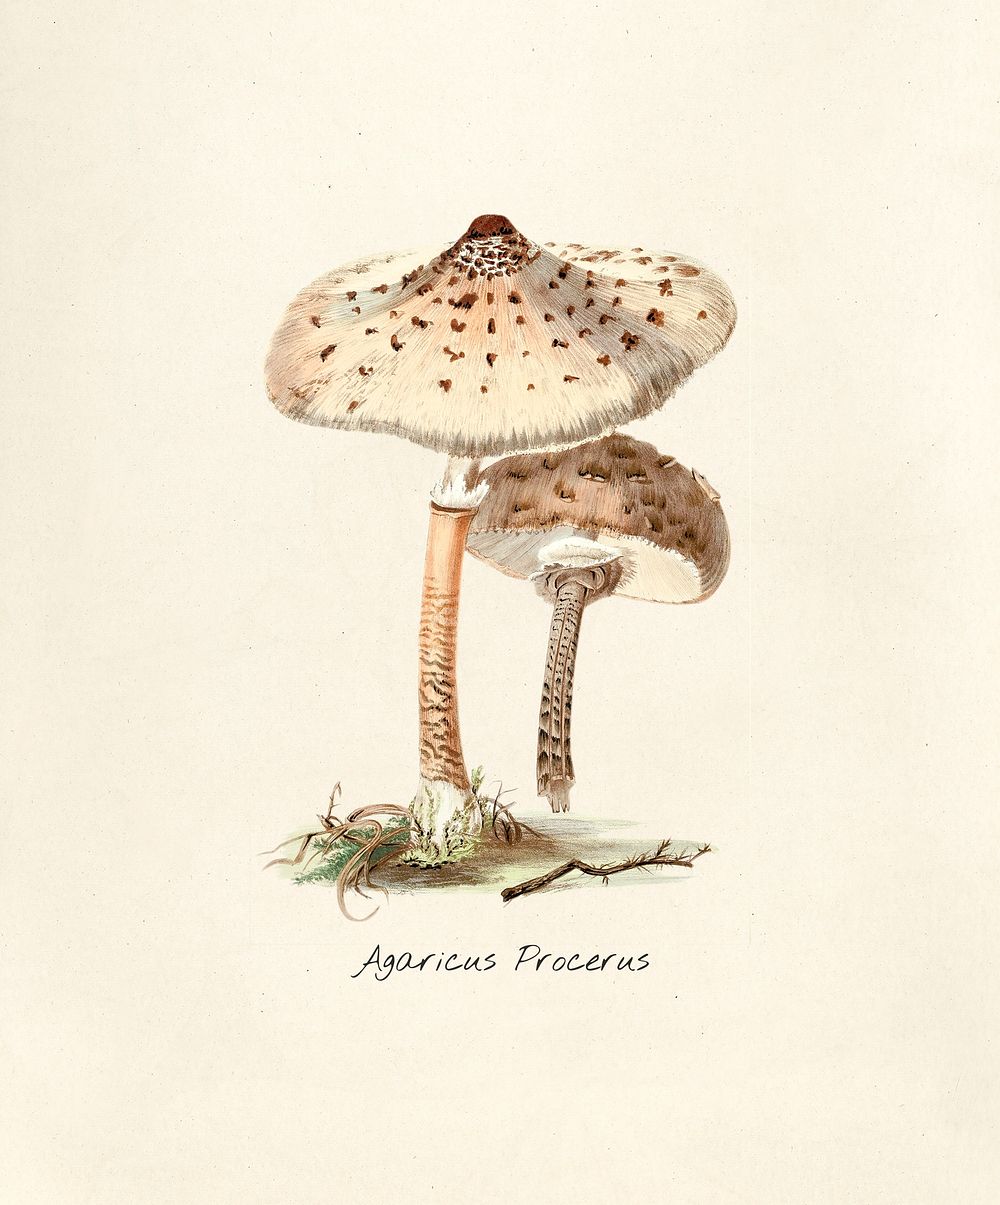 Antique illustration of Agaricus Procerus